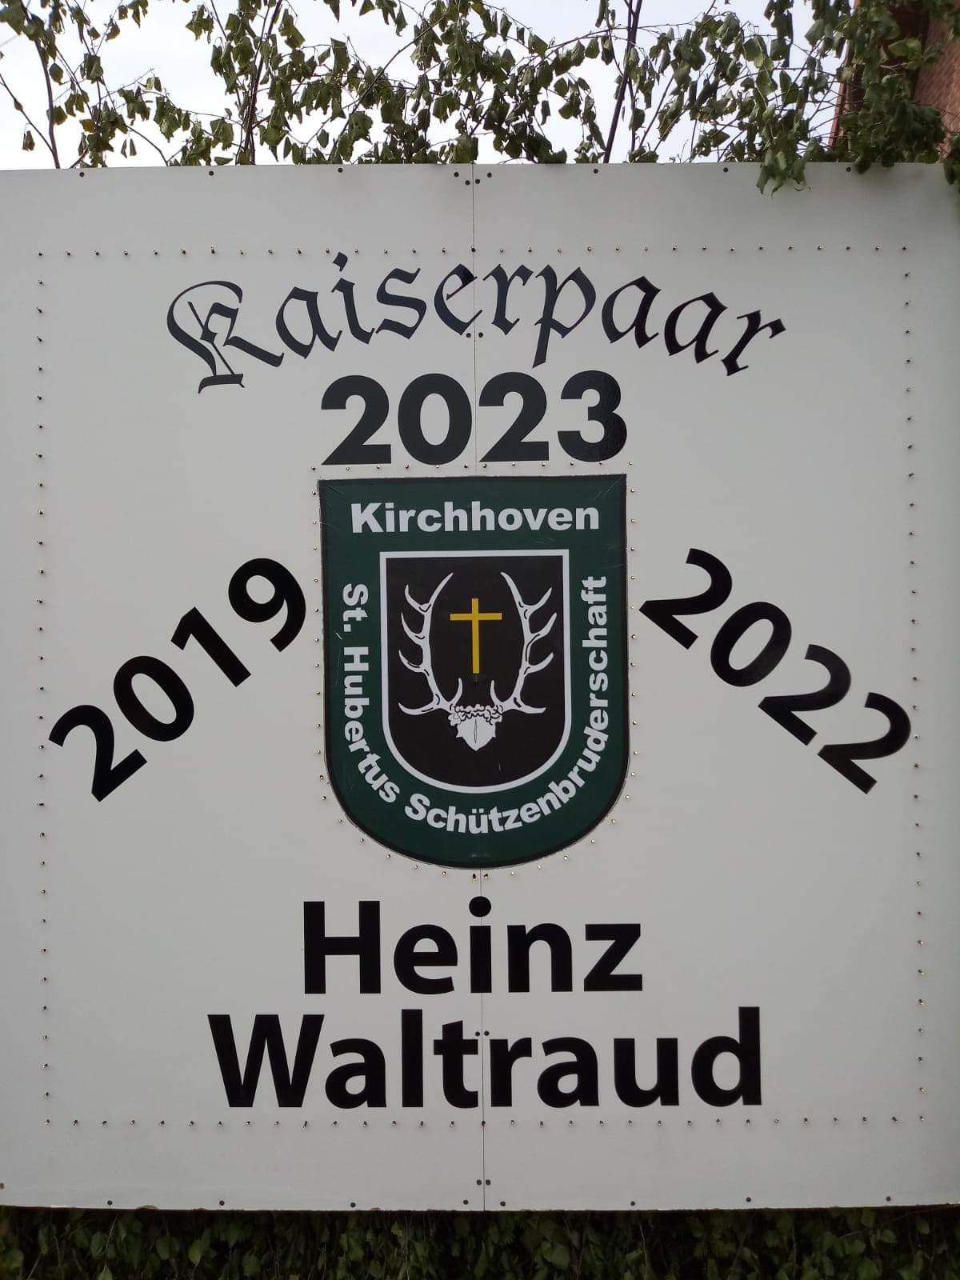 Schützenfest / Kaiserfest 2023 - Kirchhoven / Heinberg - Kaiserpaar